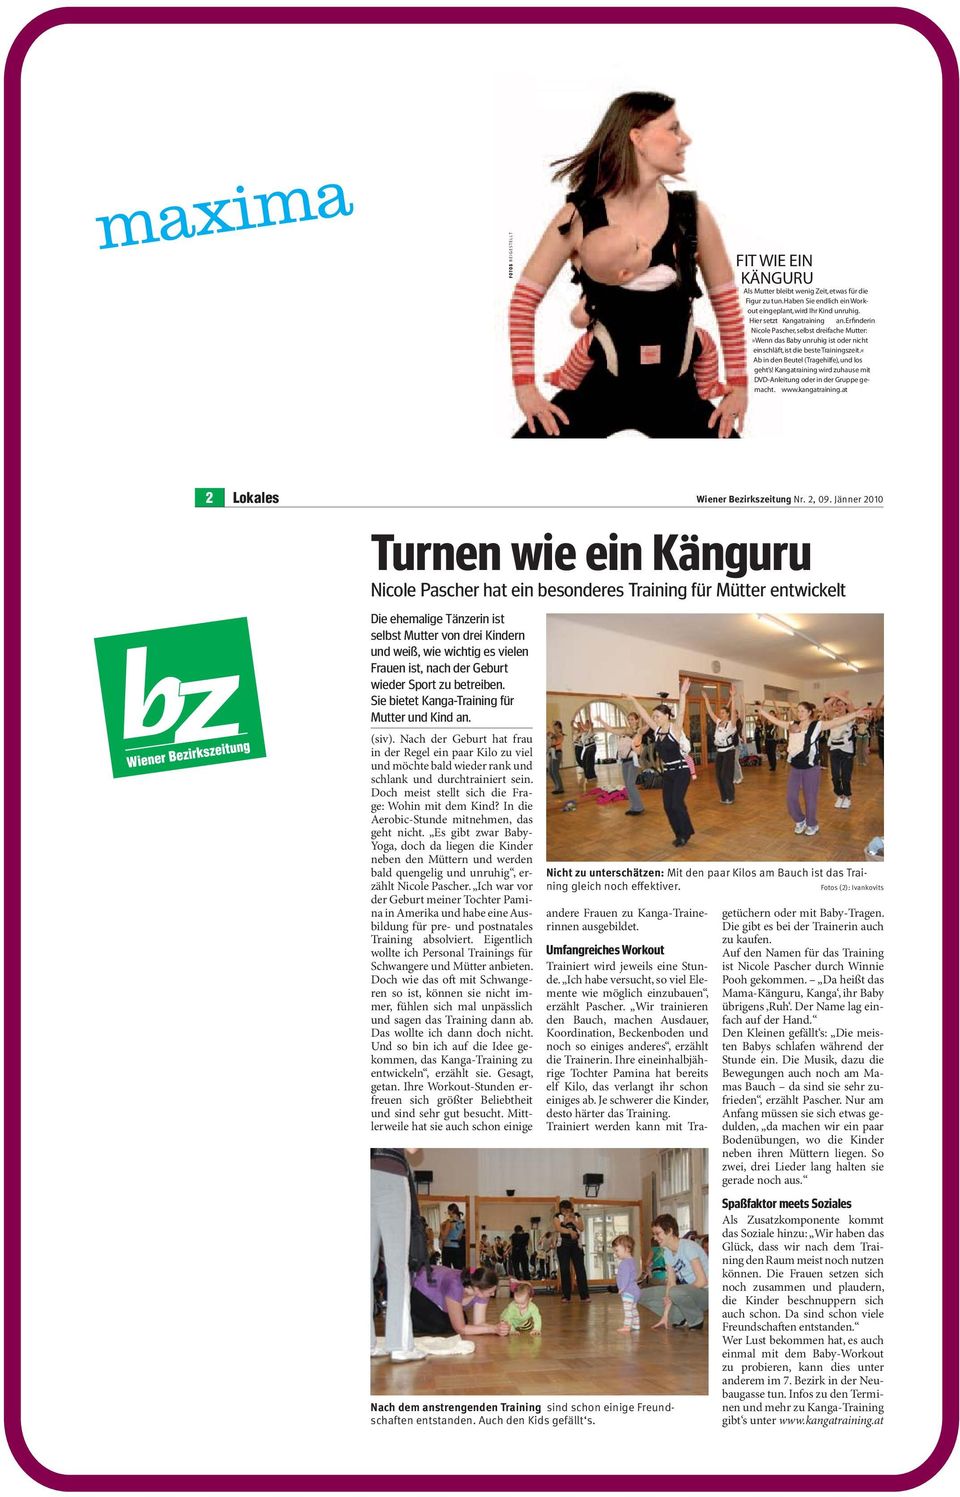 Kangatraining wird zuhause mit DVD-Anleitung oder in der Gruppe gemacht. www.kangatraining.at 2 Lokales Wiener Bezirkszeitung Nr. 2, 09.